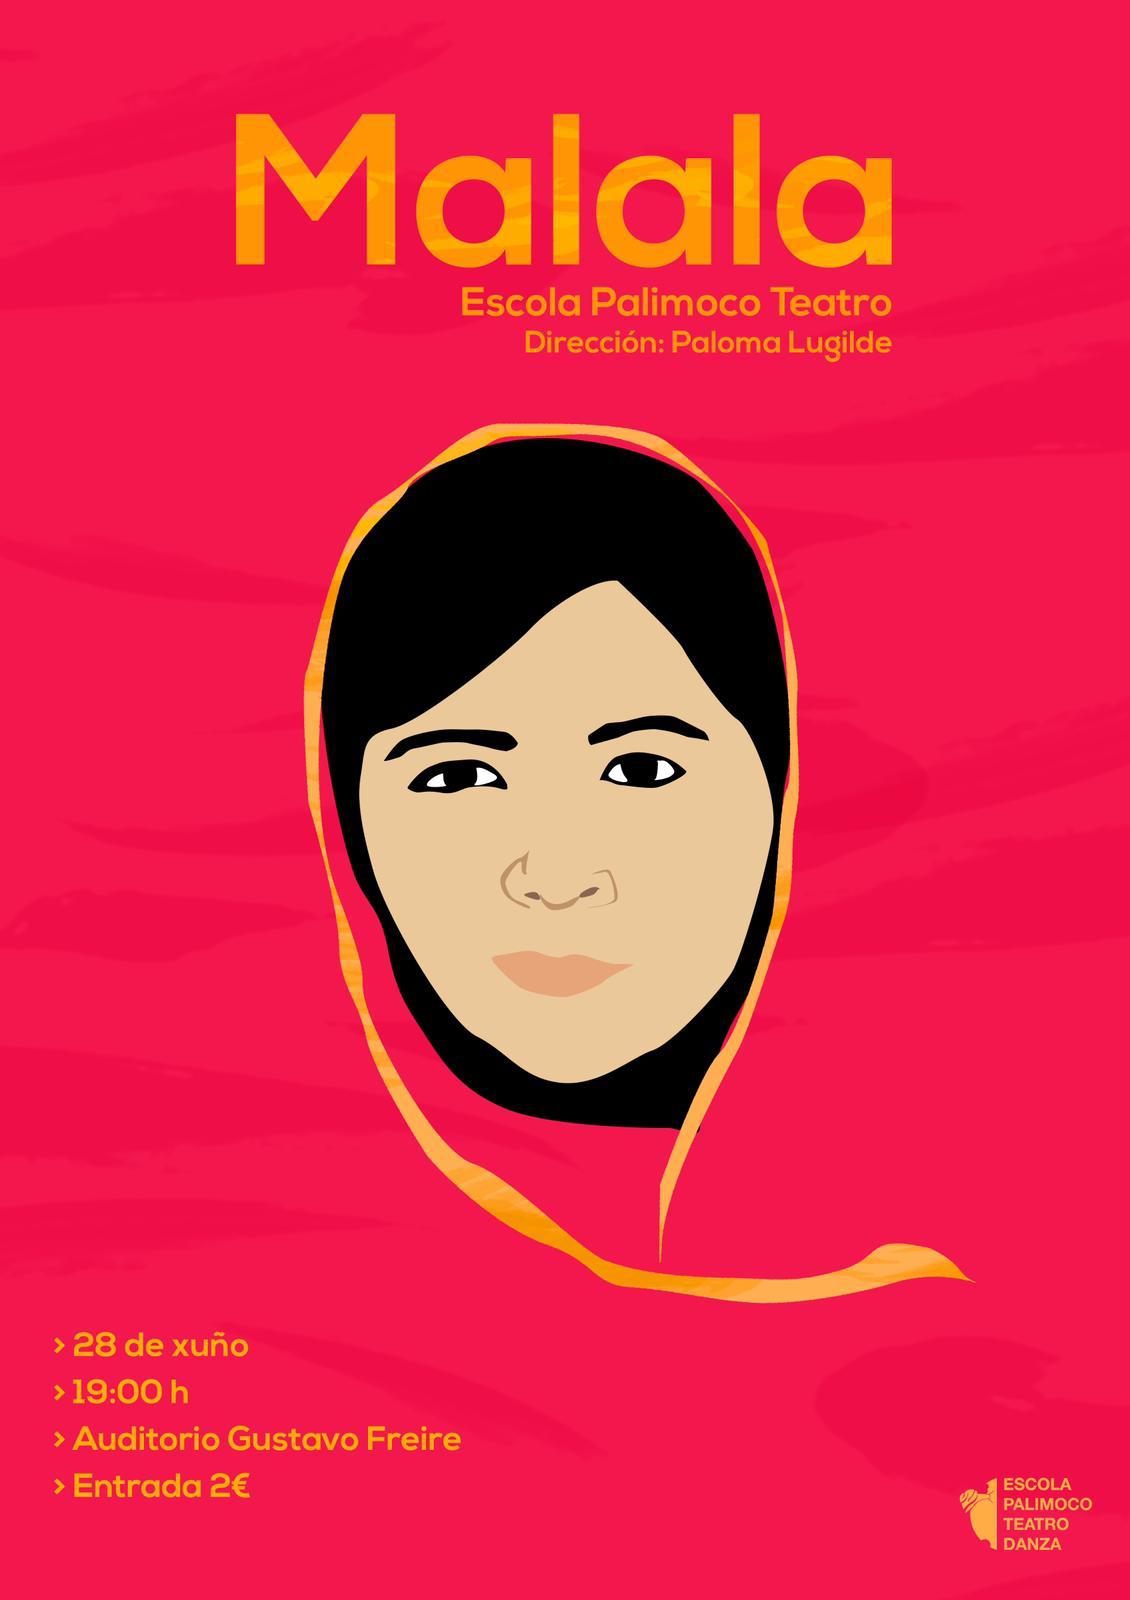 Teatro, doble función: "Malala" e "Os Miserables"